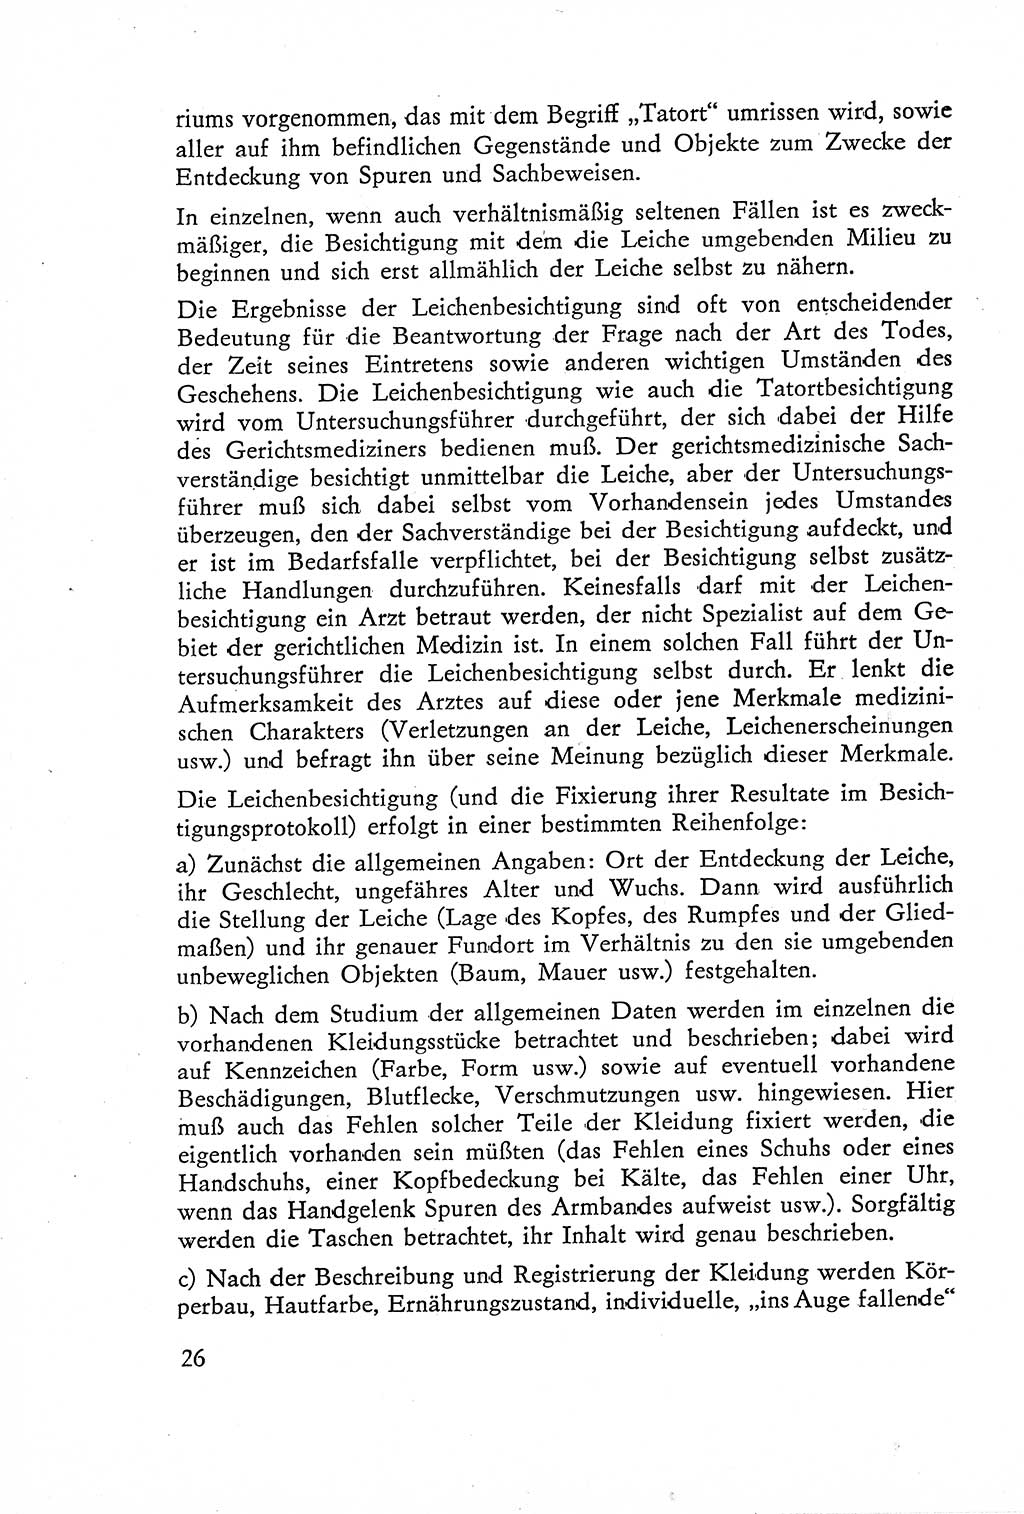 Die Untersuchung einzelner Verbrechensarten [Deutsche Demokratische Republik (DDR)] 1960, Seite 26 (Unters. Verbr.-Art. DDR 1960, S. 26)